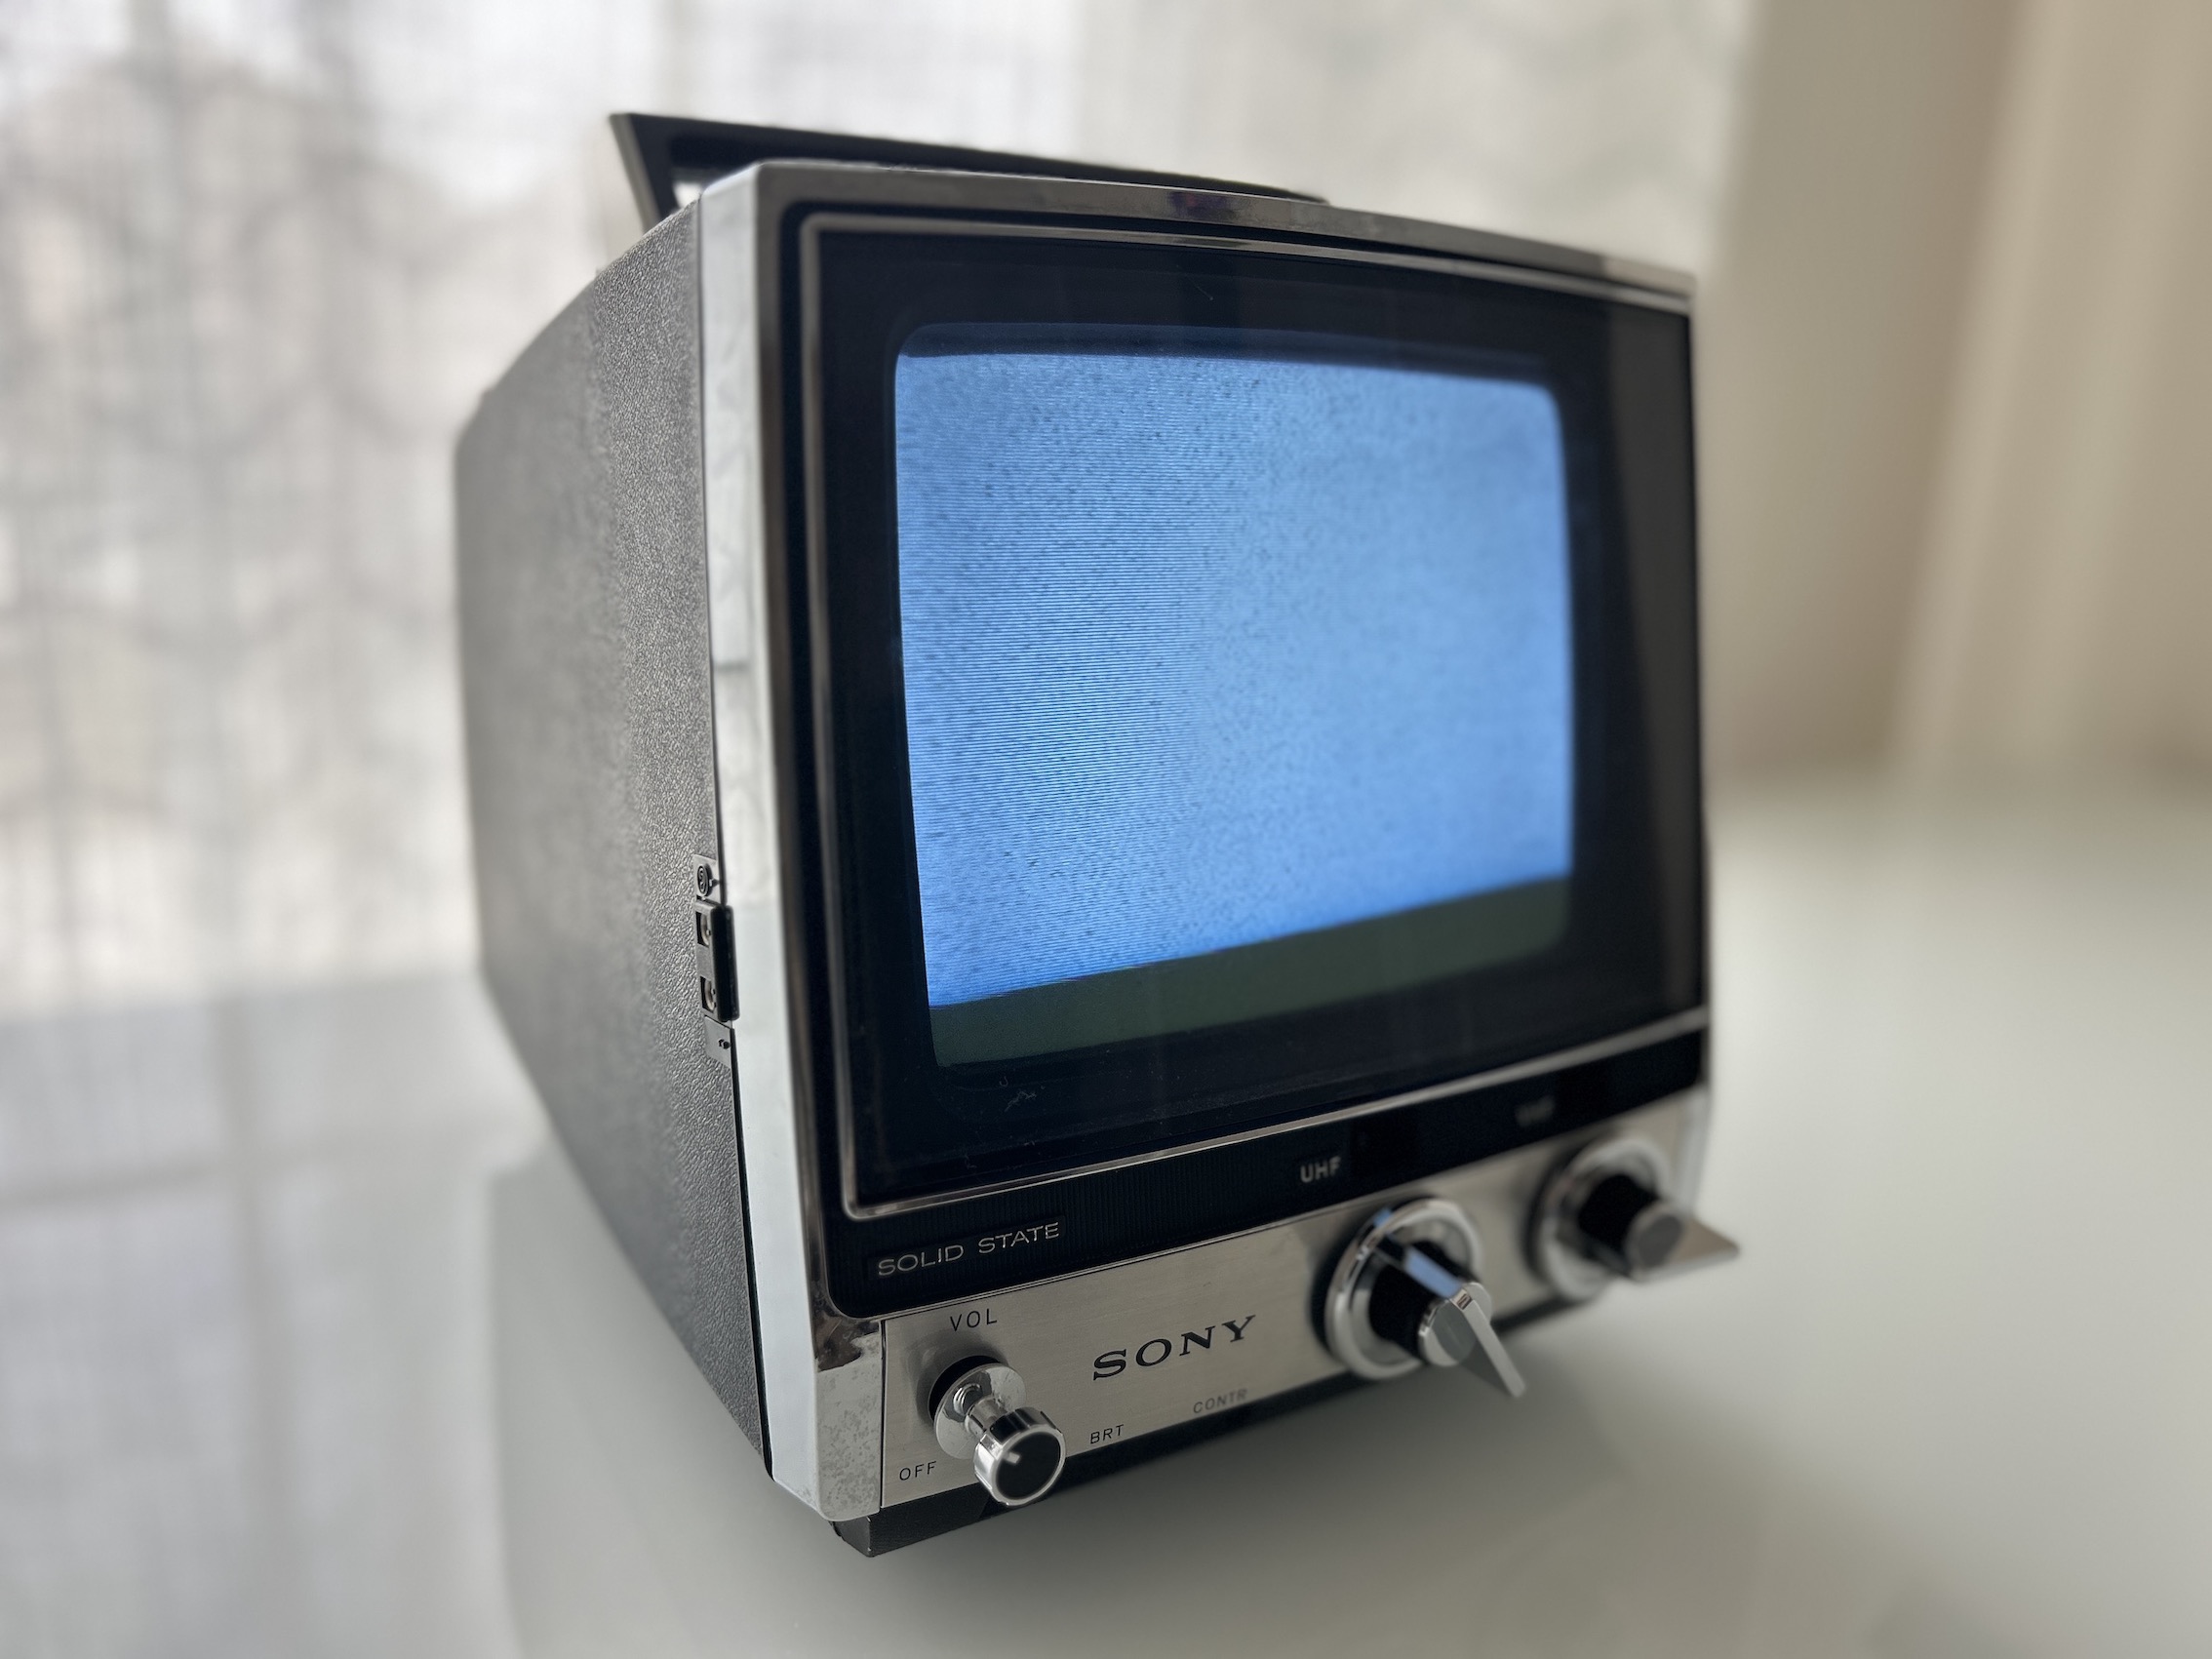 Sony TV-760